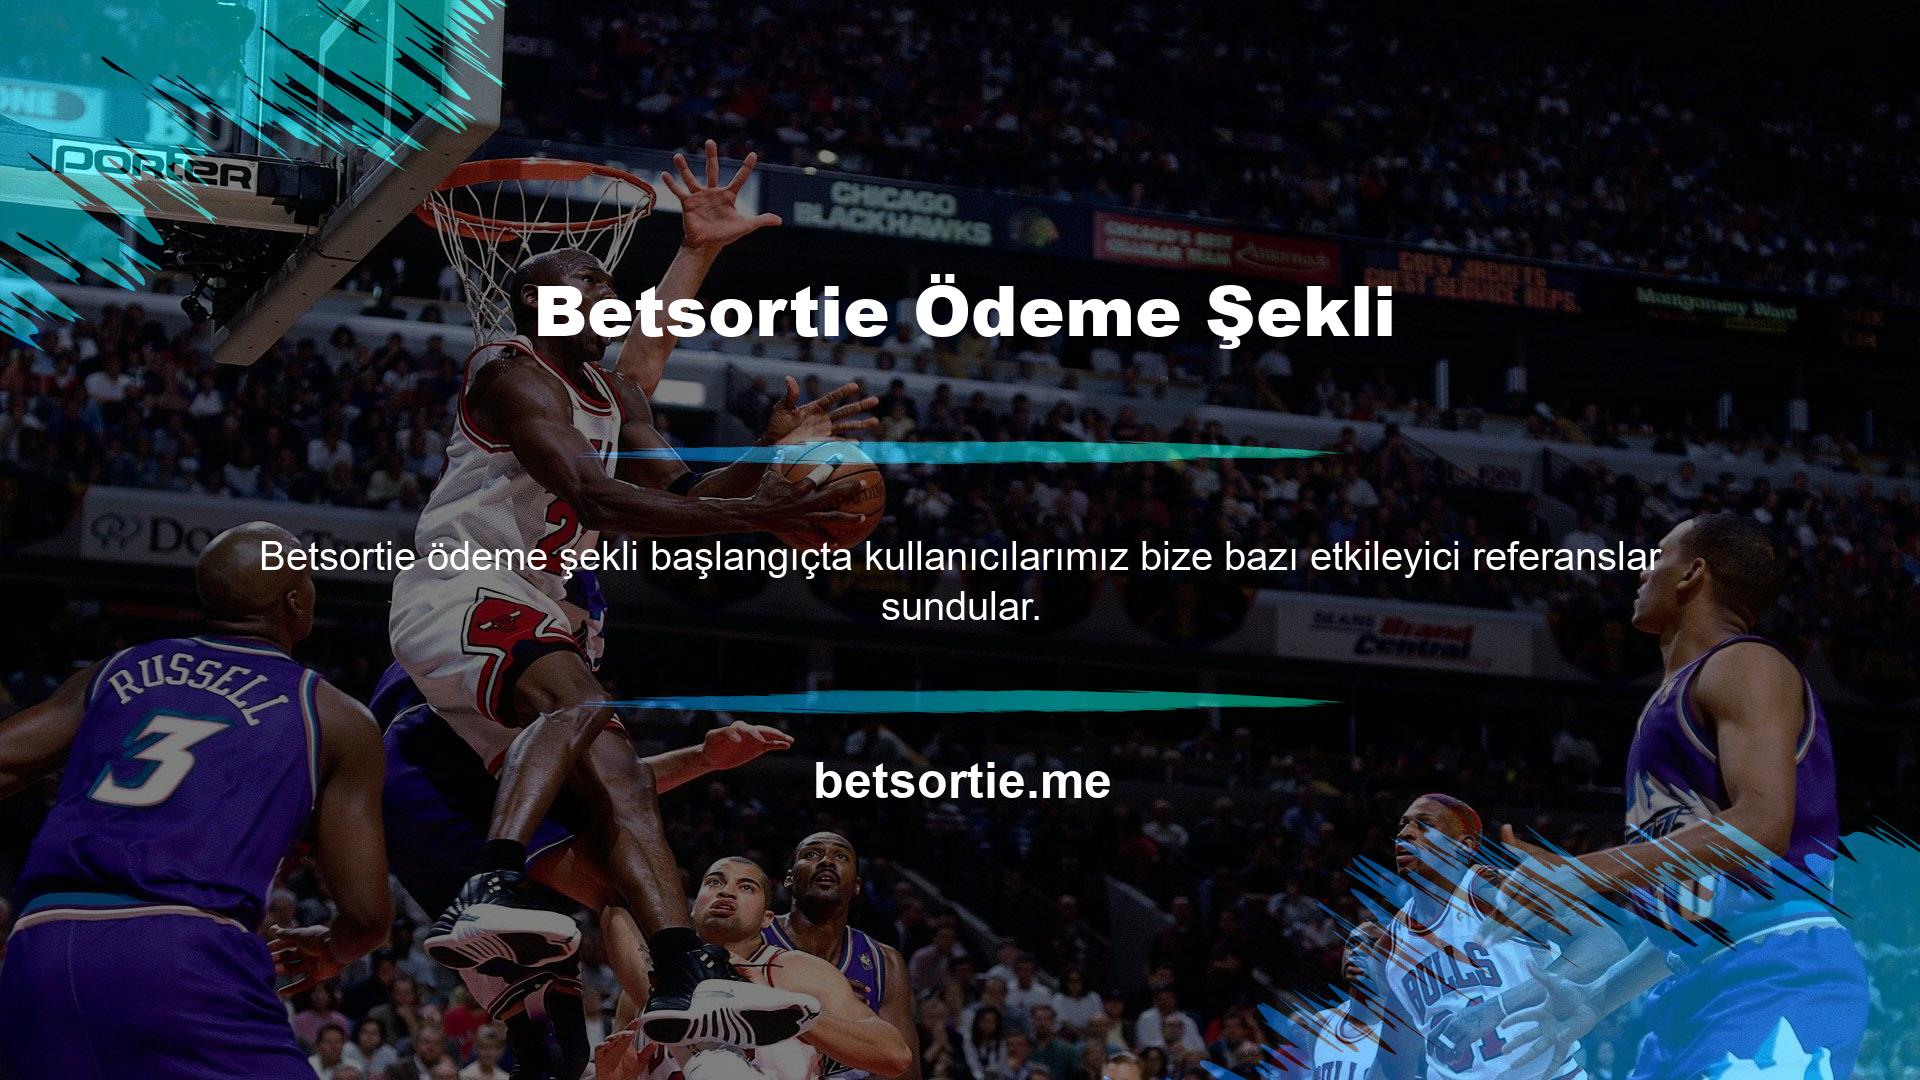 Türkiye'de Betsortie yüksek hacimli müşteriler kabul etmesine rağmen platformumuz büyük bahisçilerle karşılaştırılabilir düzeydedir